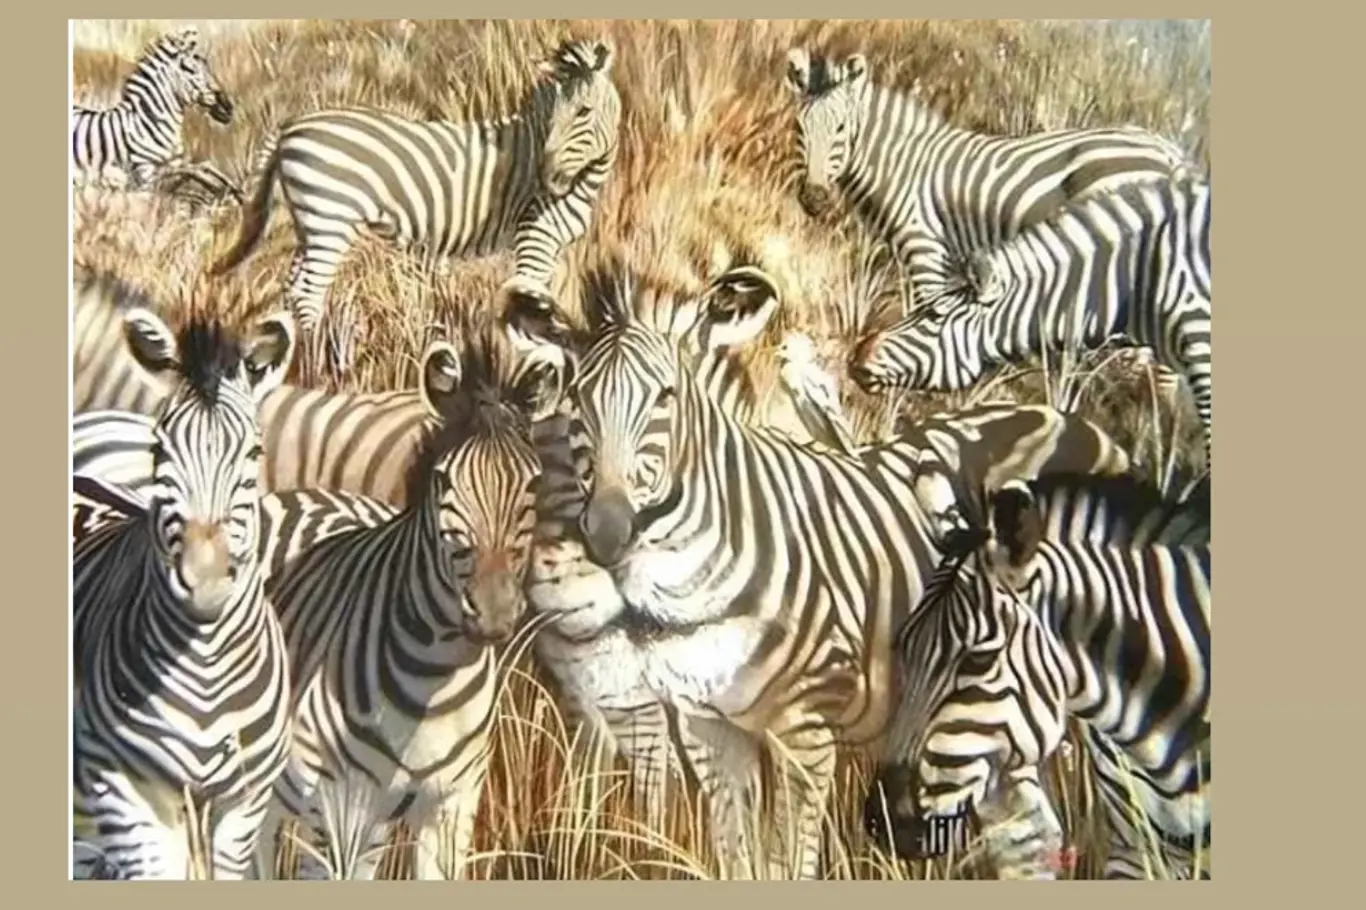 Blesková výzva postřehu: Najdi lva skrytého mezi zebrami